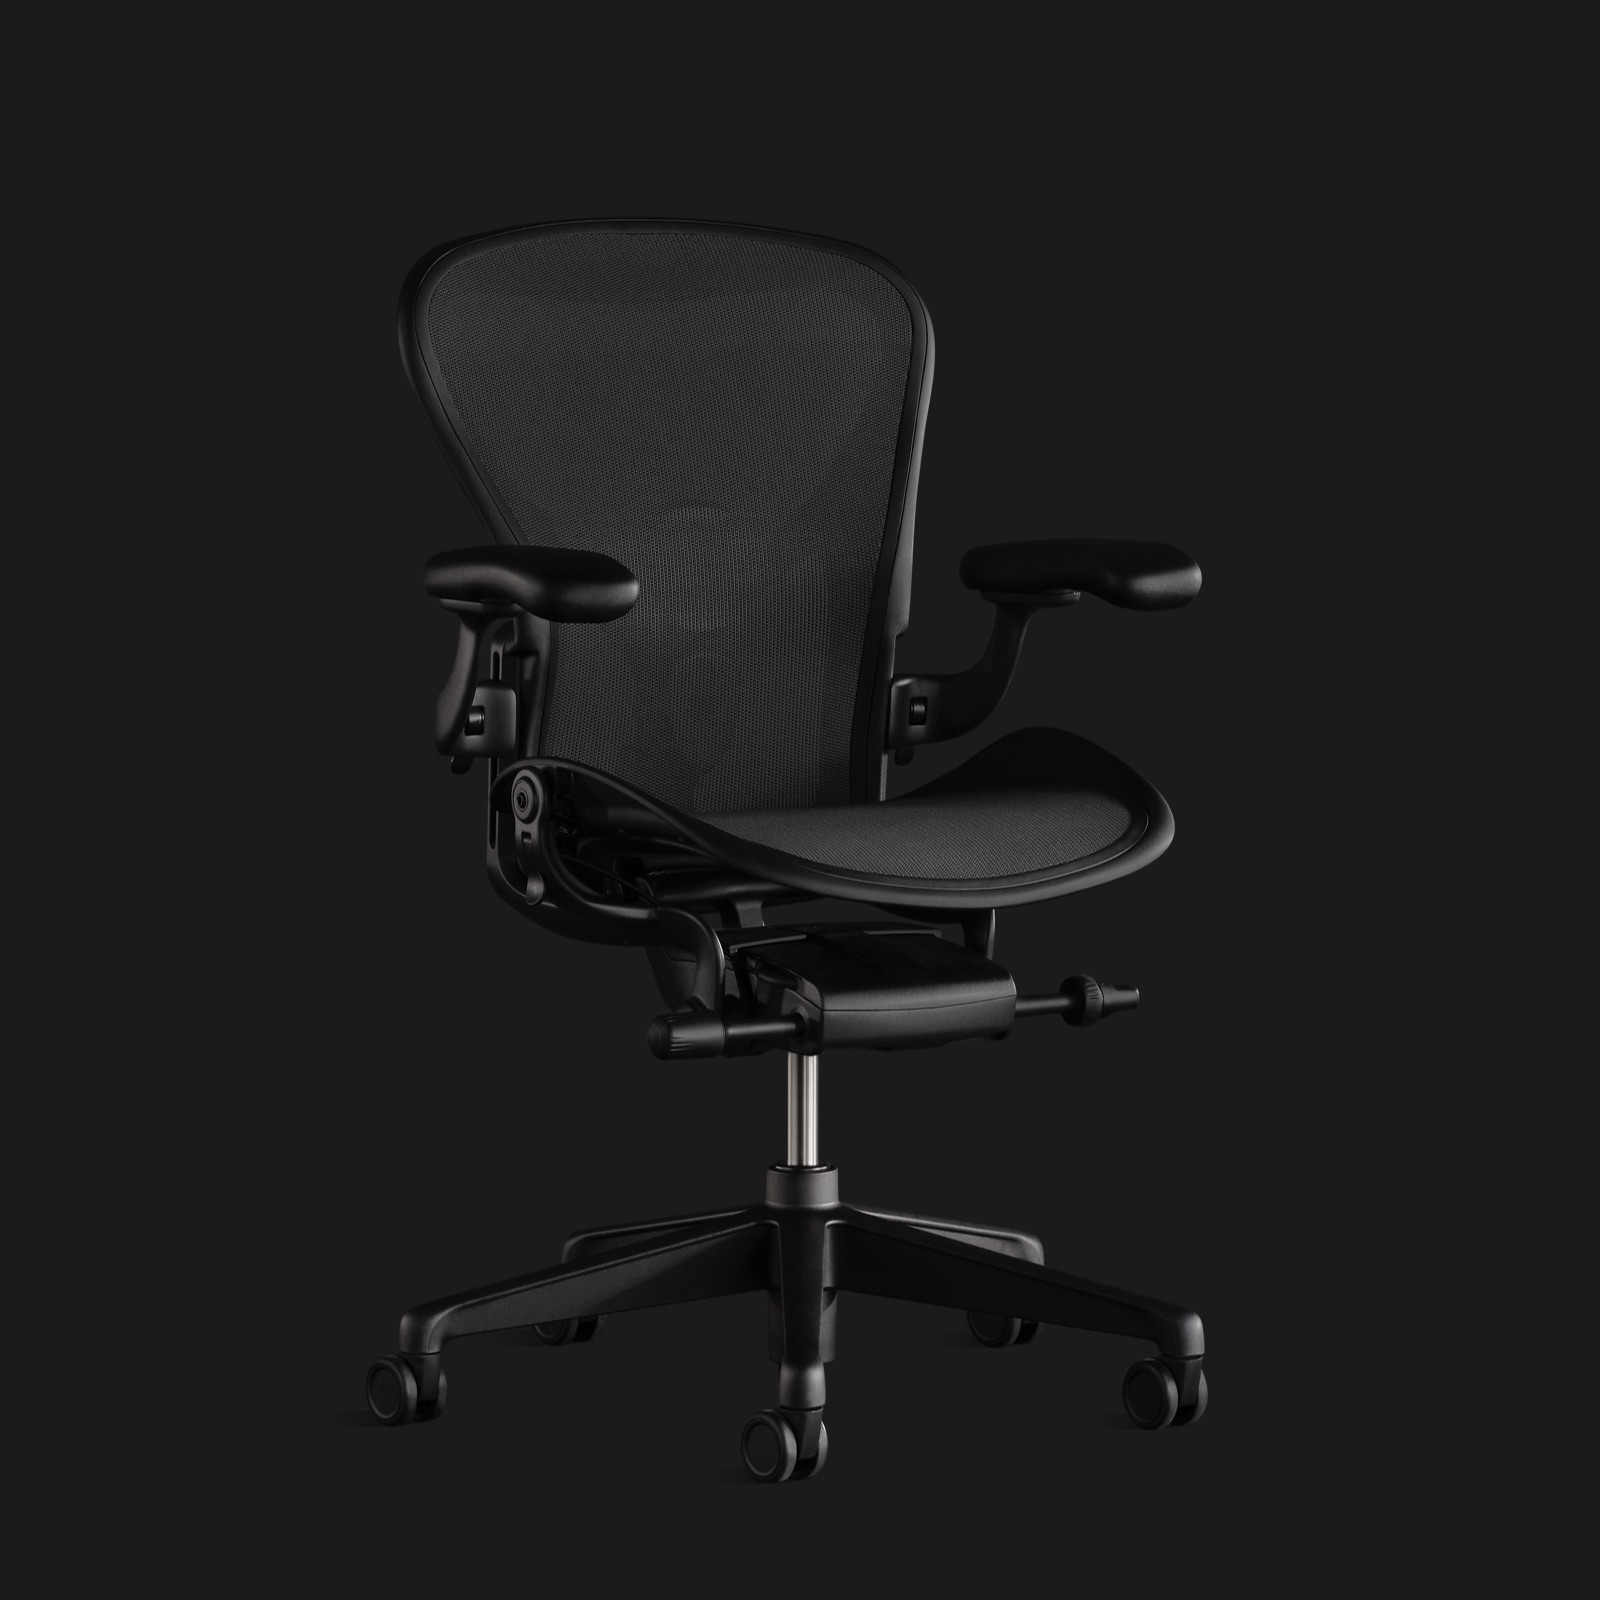 Una silla Aeron completamente negra sobre un fondo negro, mostrada desde el frente en un ligero ángulo.